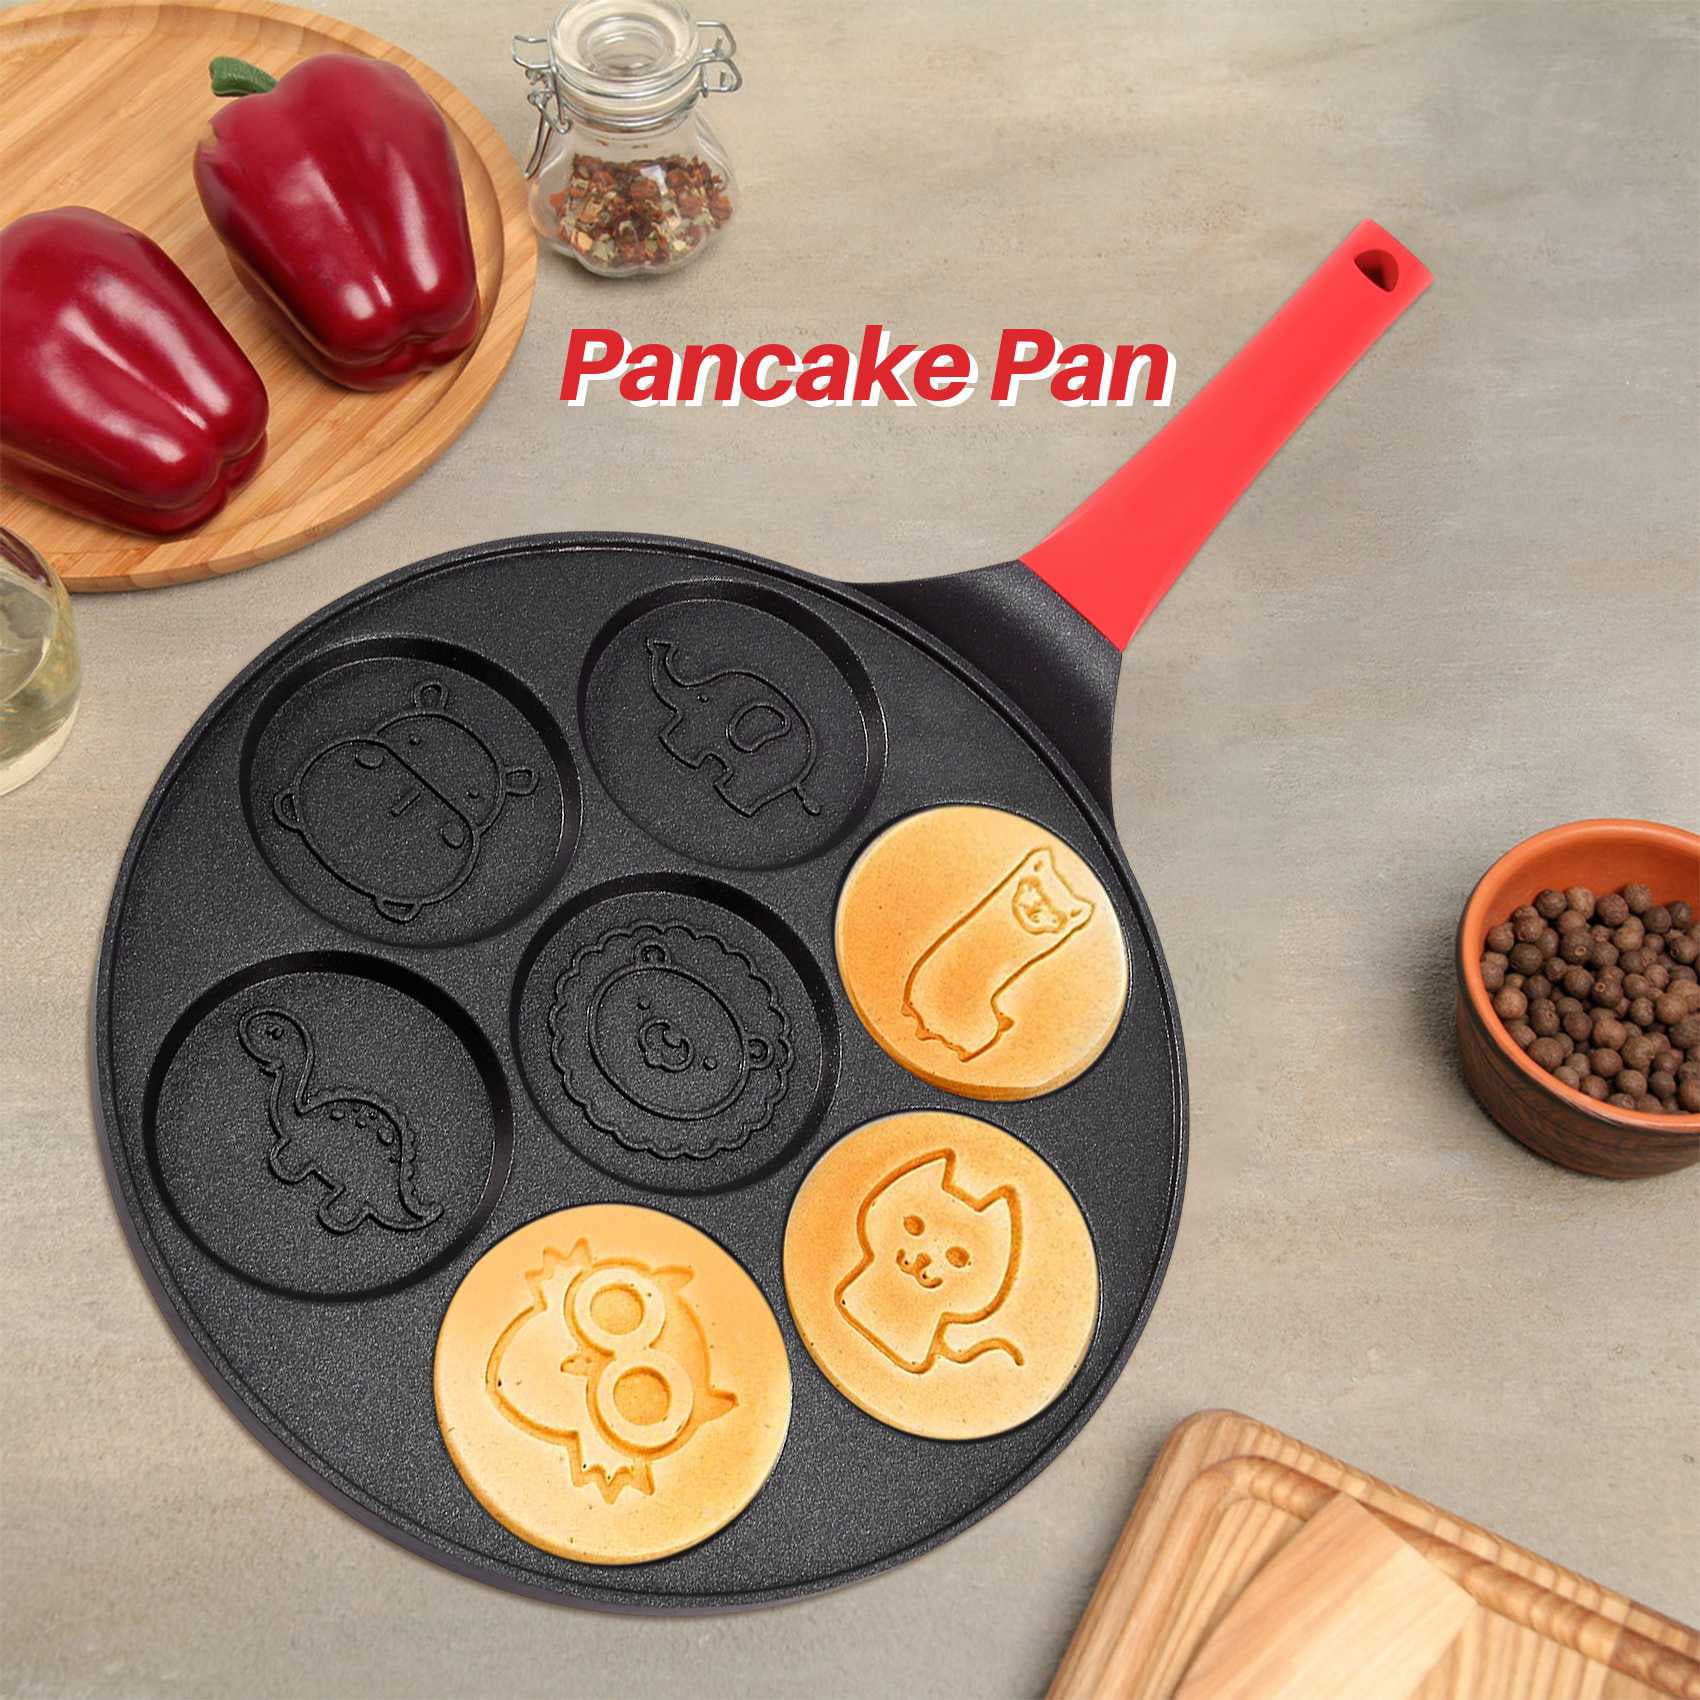 KRETAELY Pancake Pan Nonstick Pancake Griddle Mini Pancake Maker with 100%  PFOA Free Coating pancake skillet Suitable for All Cooktops